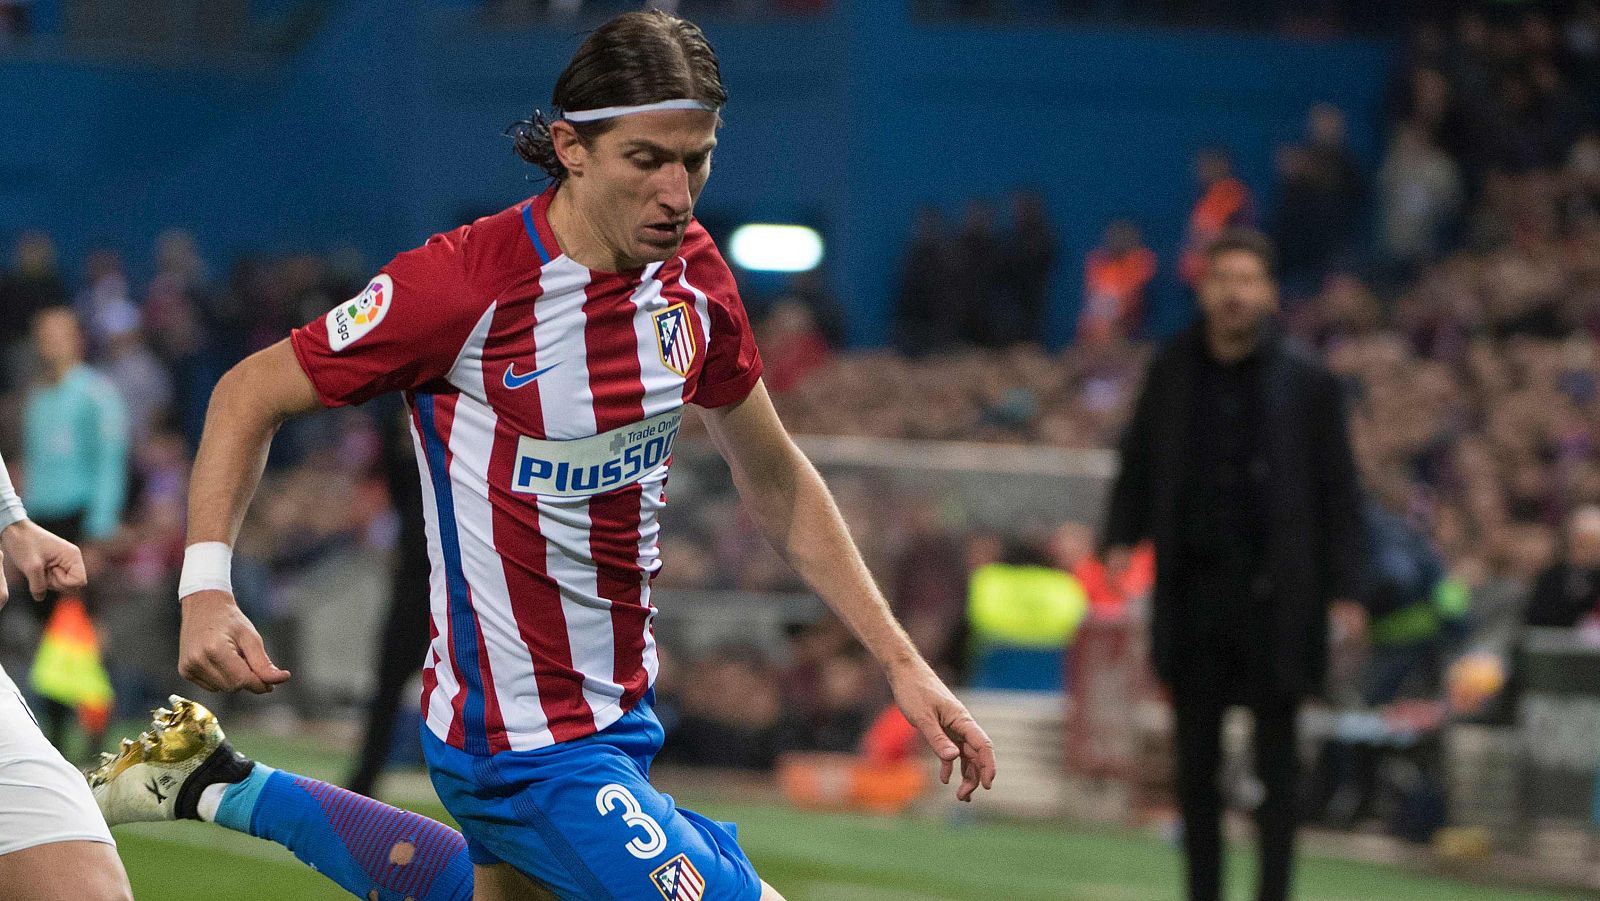 El Atlético de Madrid confirma que Filipe Luis sufre una contractura